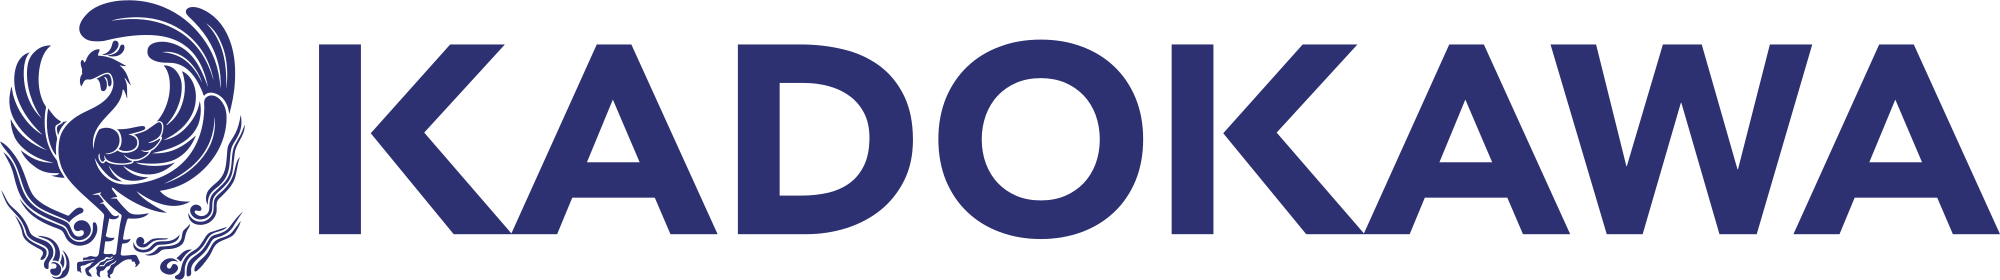 KADOKAWA Logo